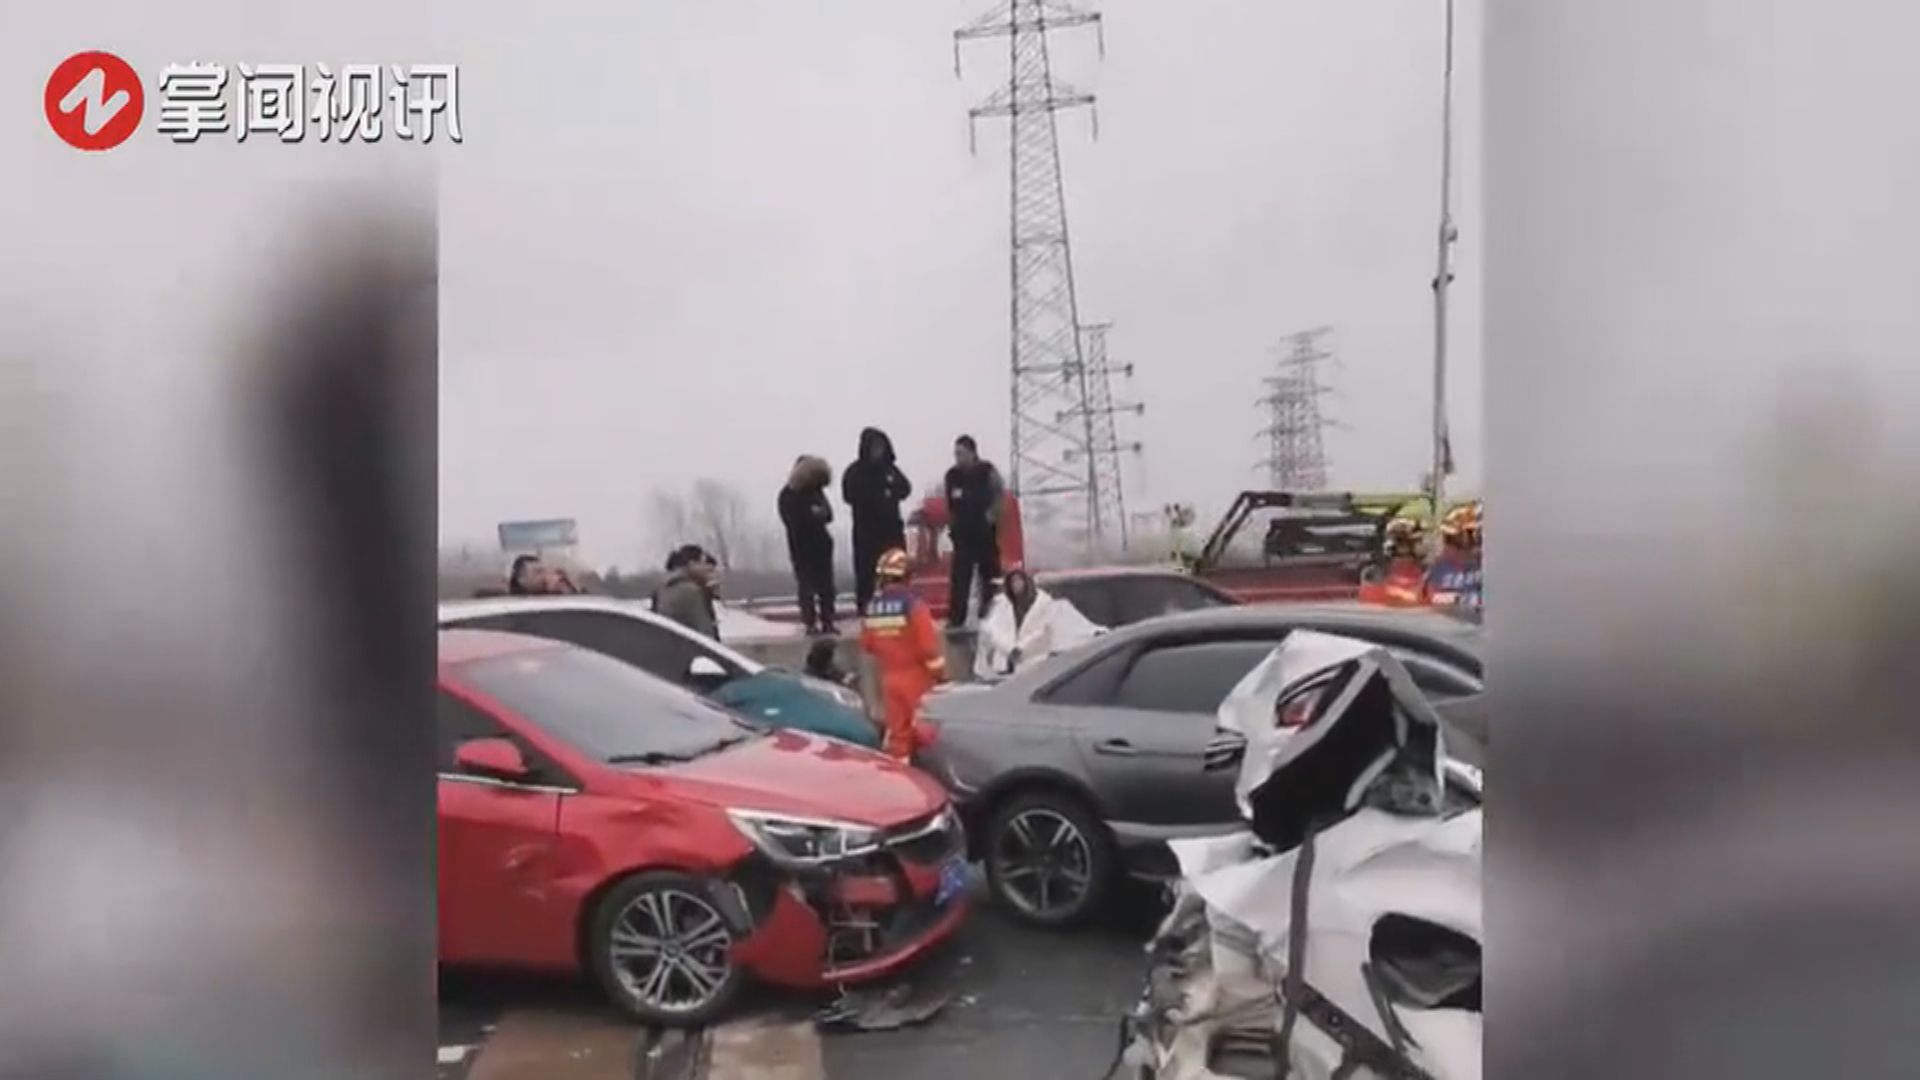 蘇州架空路段逾百車追尾碰撞致九人傷